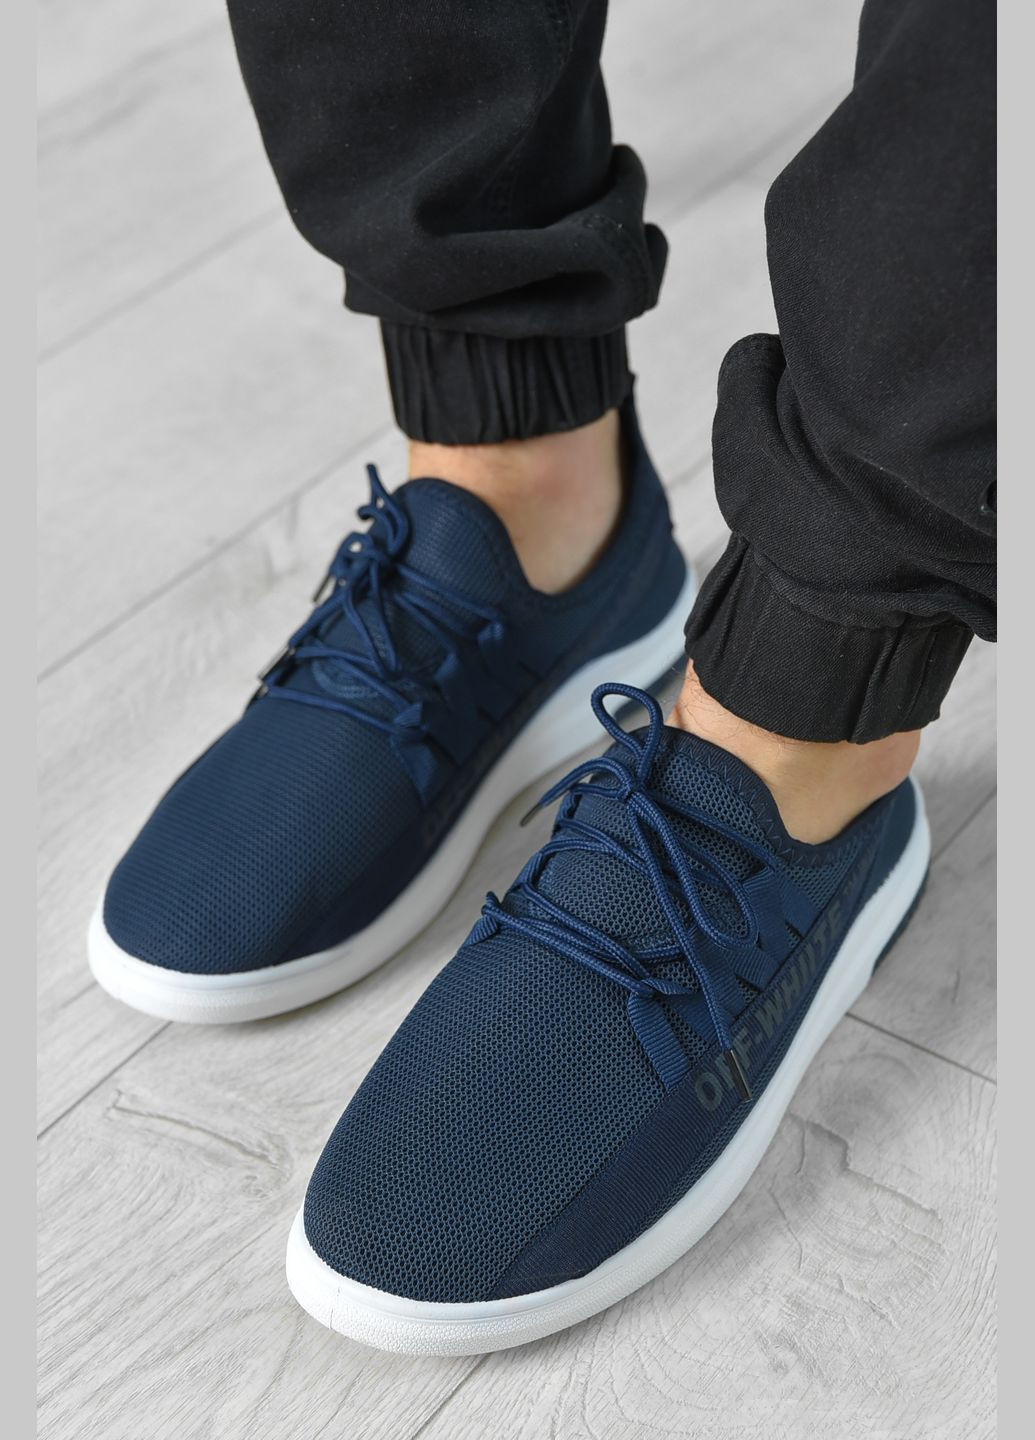 Темно-синие демисезонные кроссовки мужские темно-синего цвета на шнуровке текстиль Let's Shop